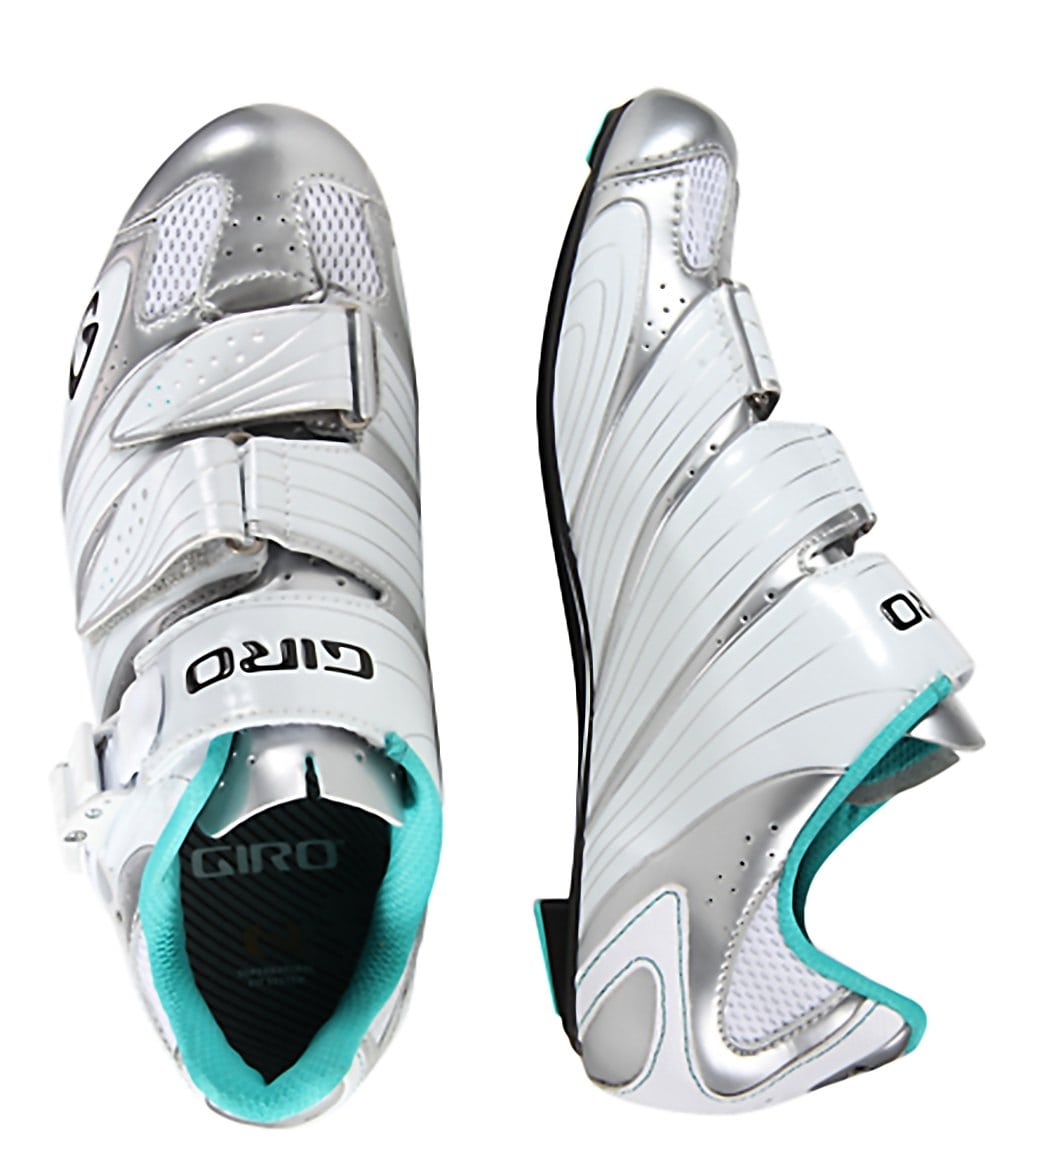 Giro Women's Factress Cycling Shoe at 